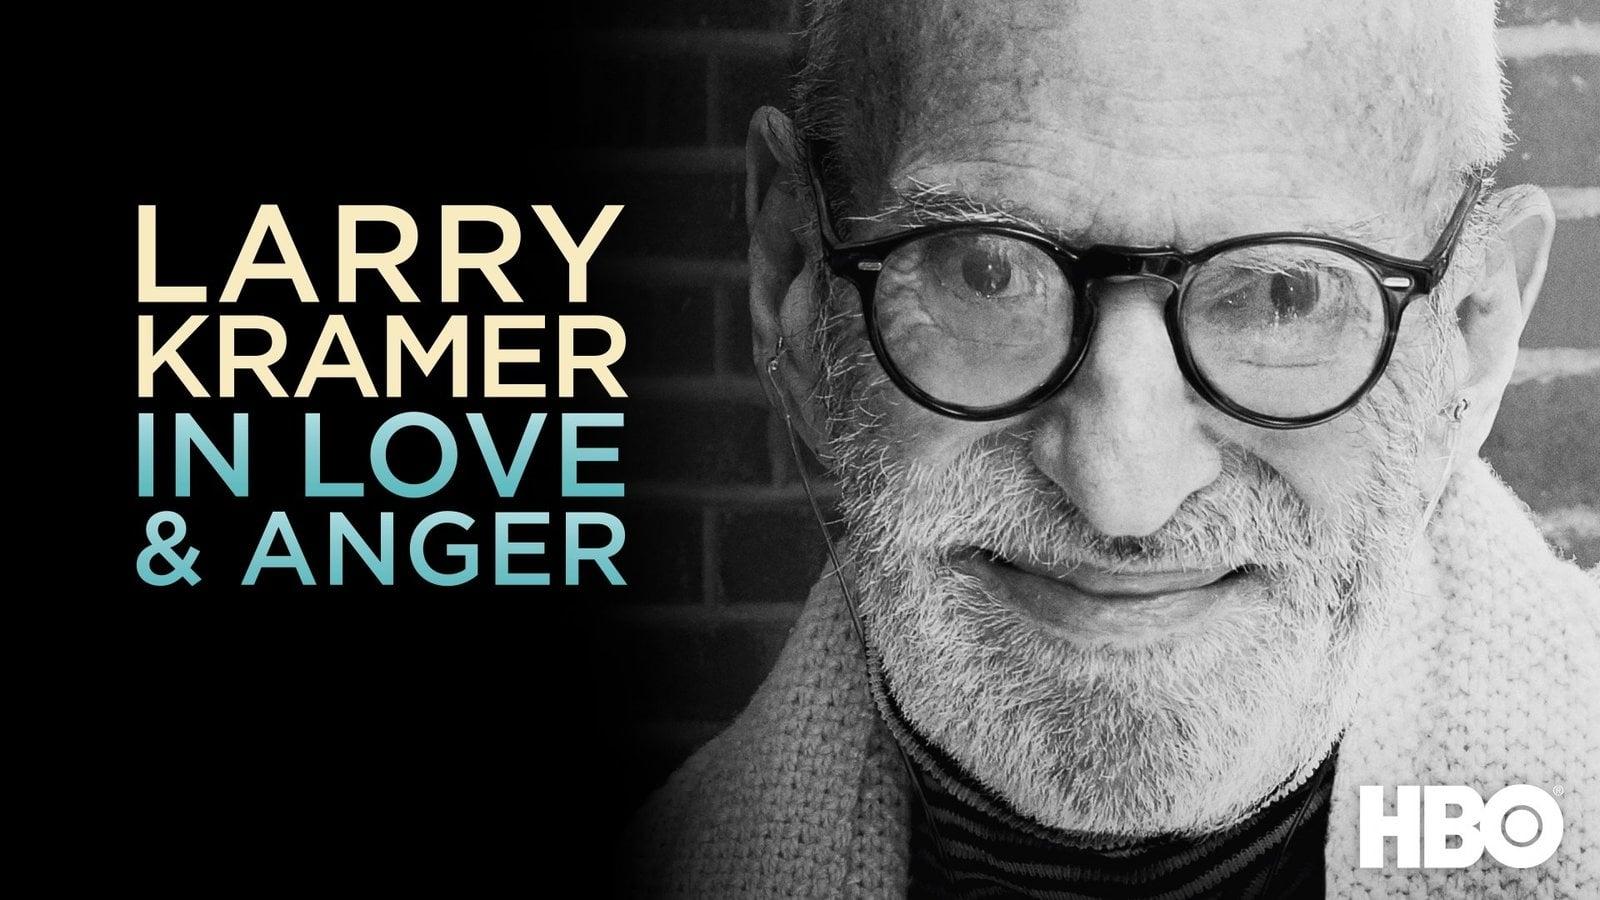 Larry Kramer In Love & Anger backdrop